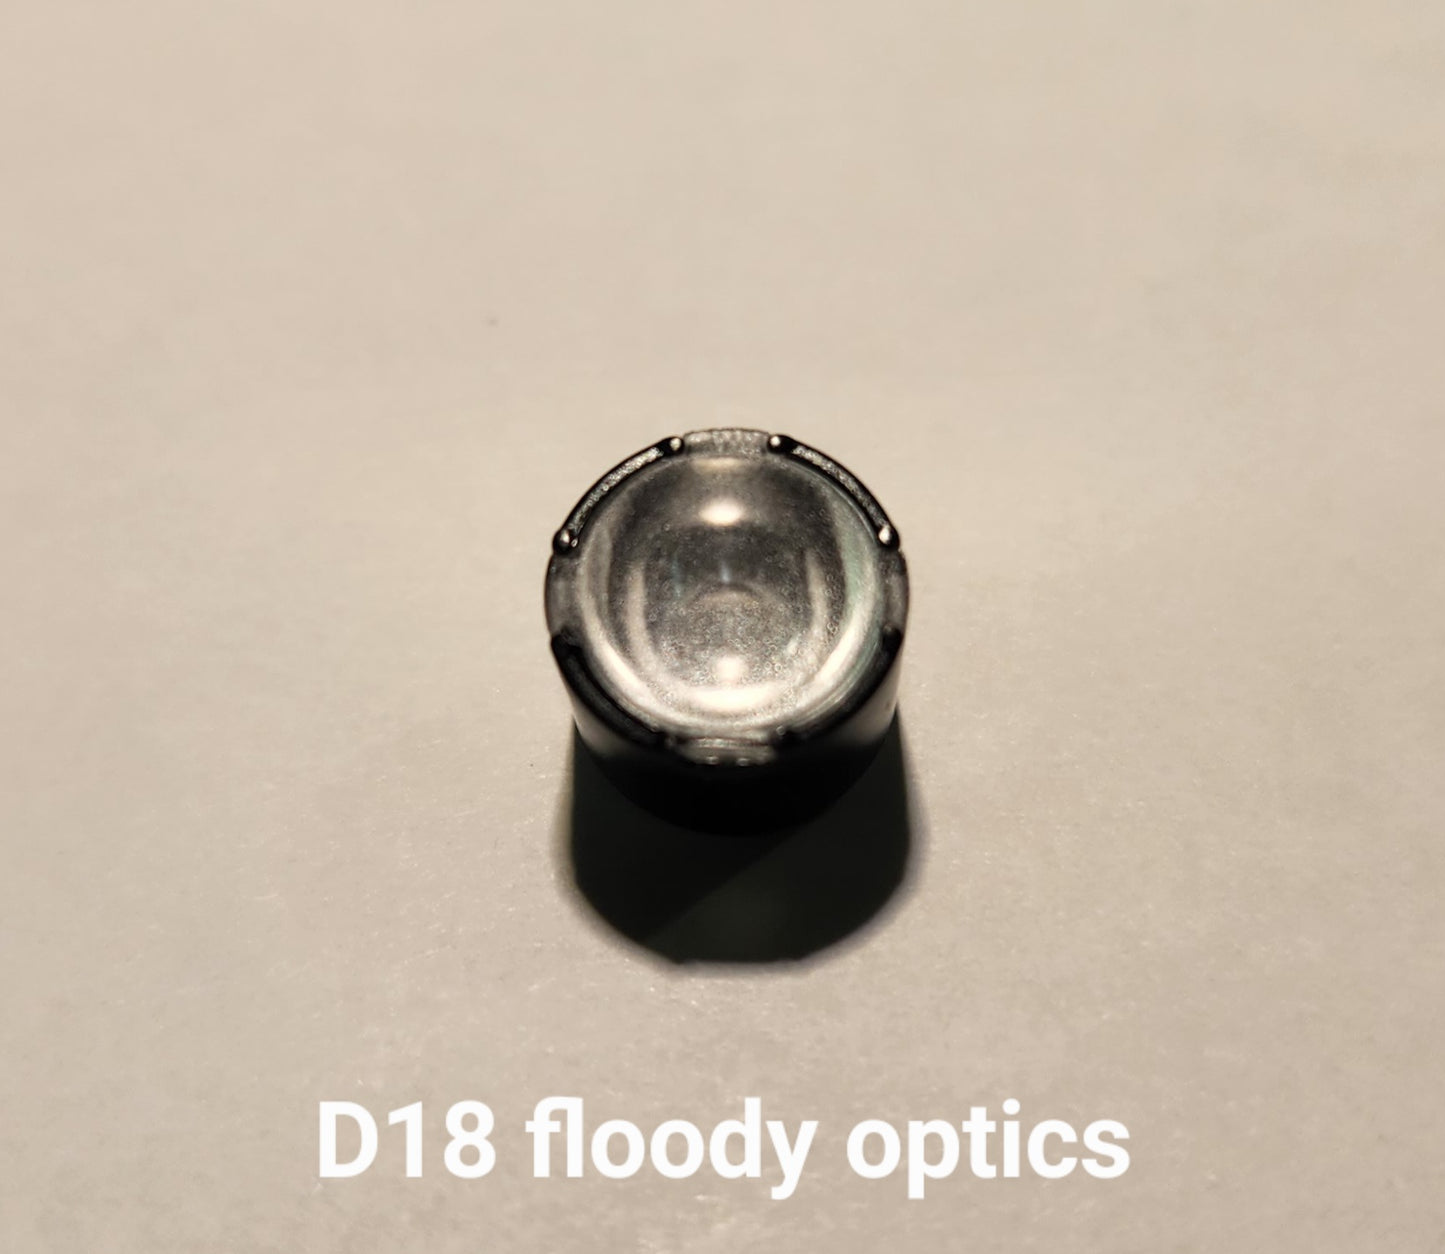 Emisar/Noctigon Replacement Glass TIR Optics LEDIL D18 FLOODY OPTICS